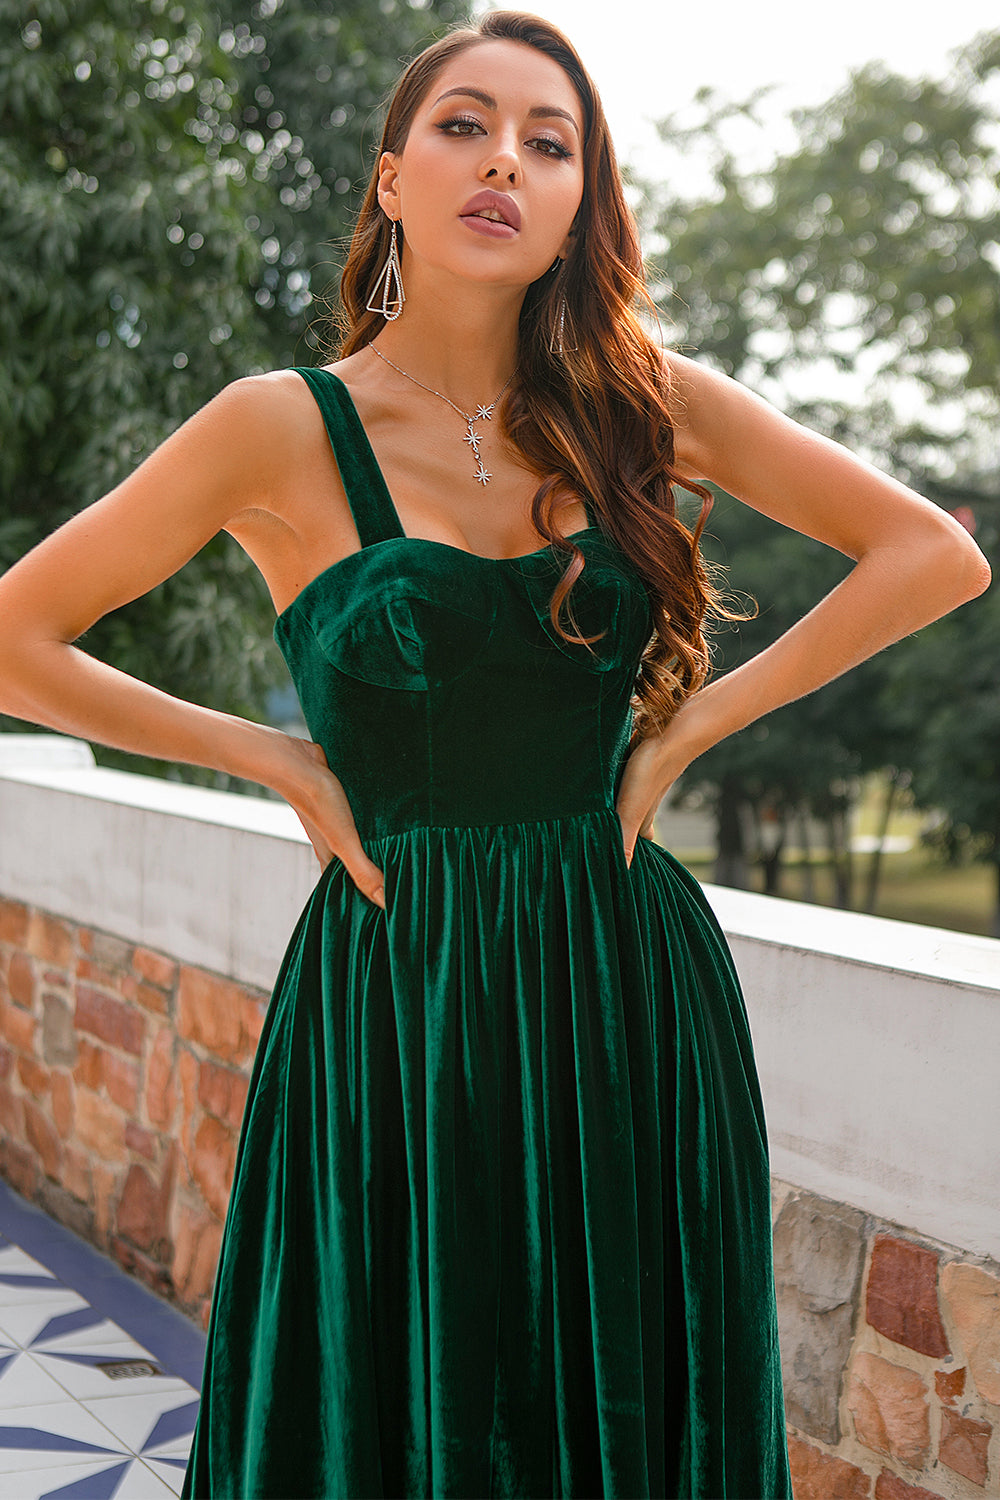 green velvet dress